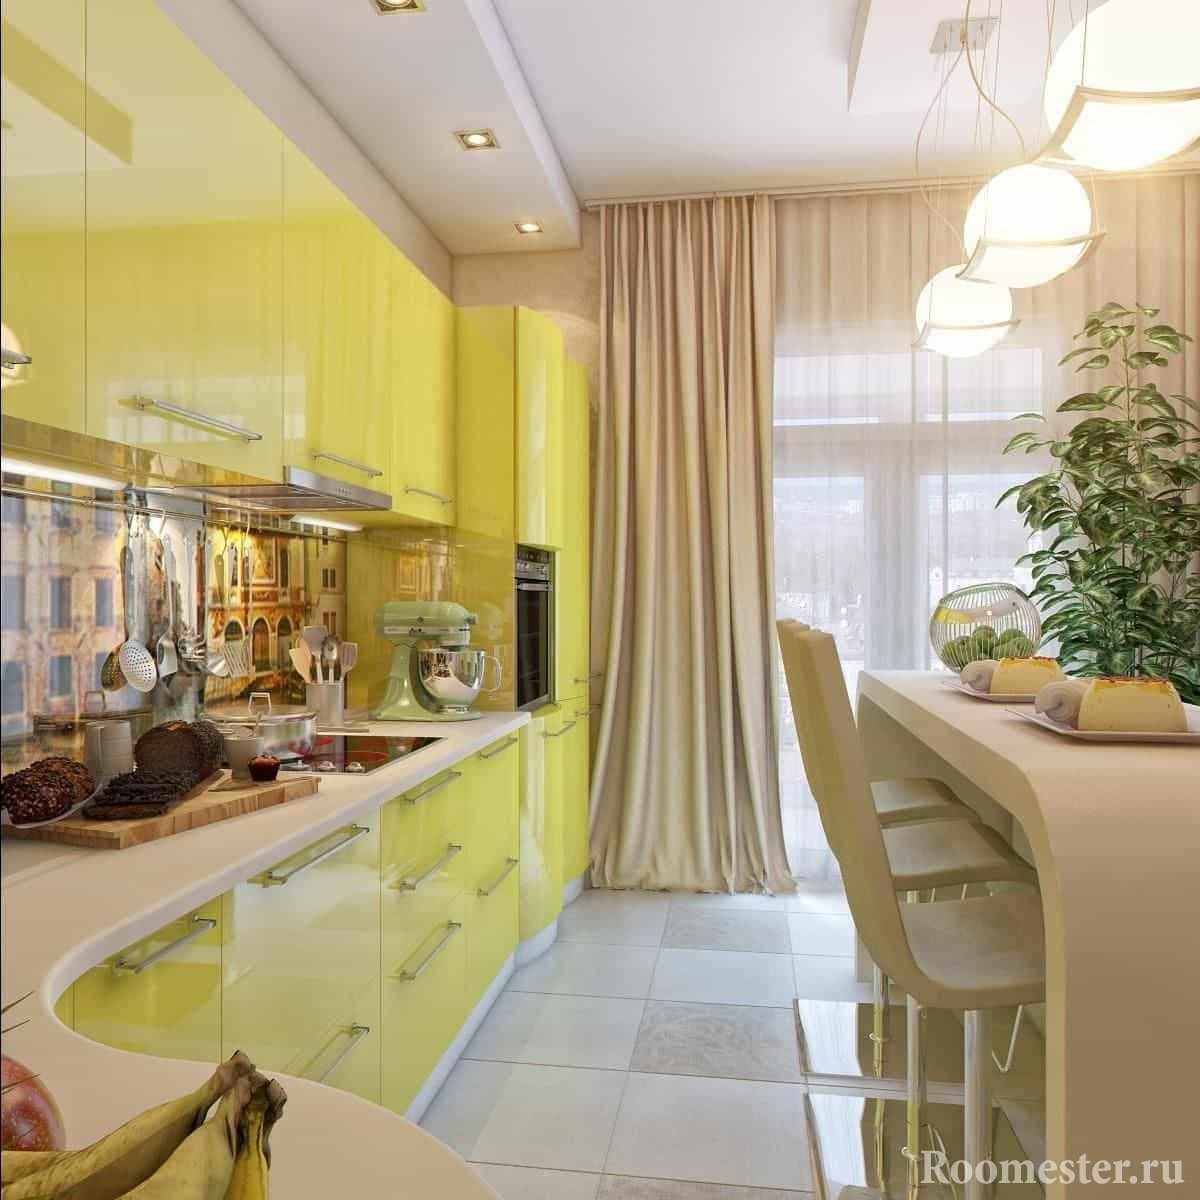 Угловая вытянутая желтая кухня с оригинальным столом